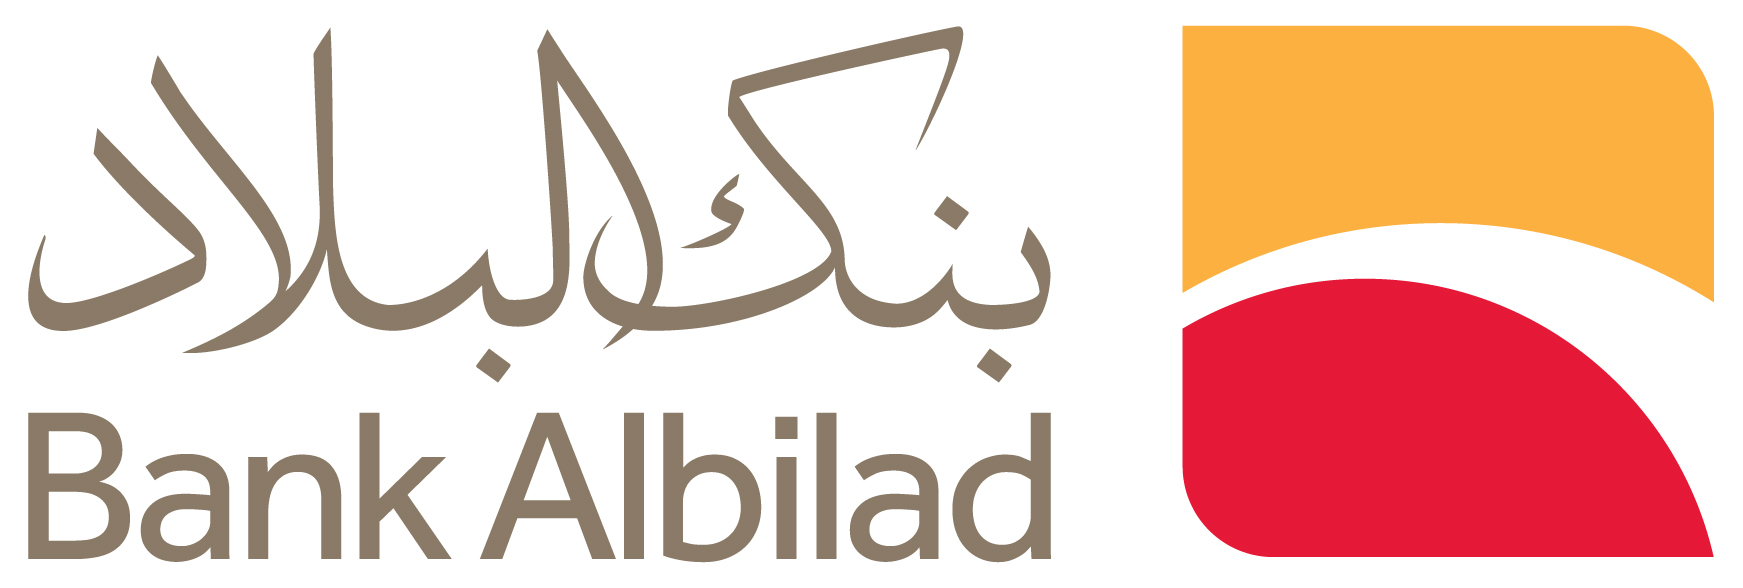 Bank Albilad Brand Logo